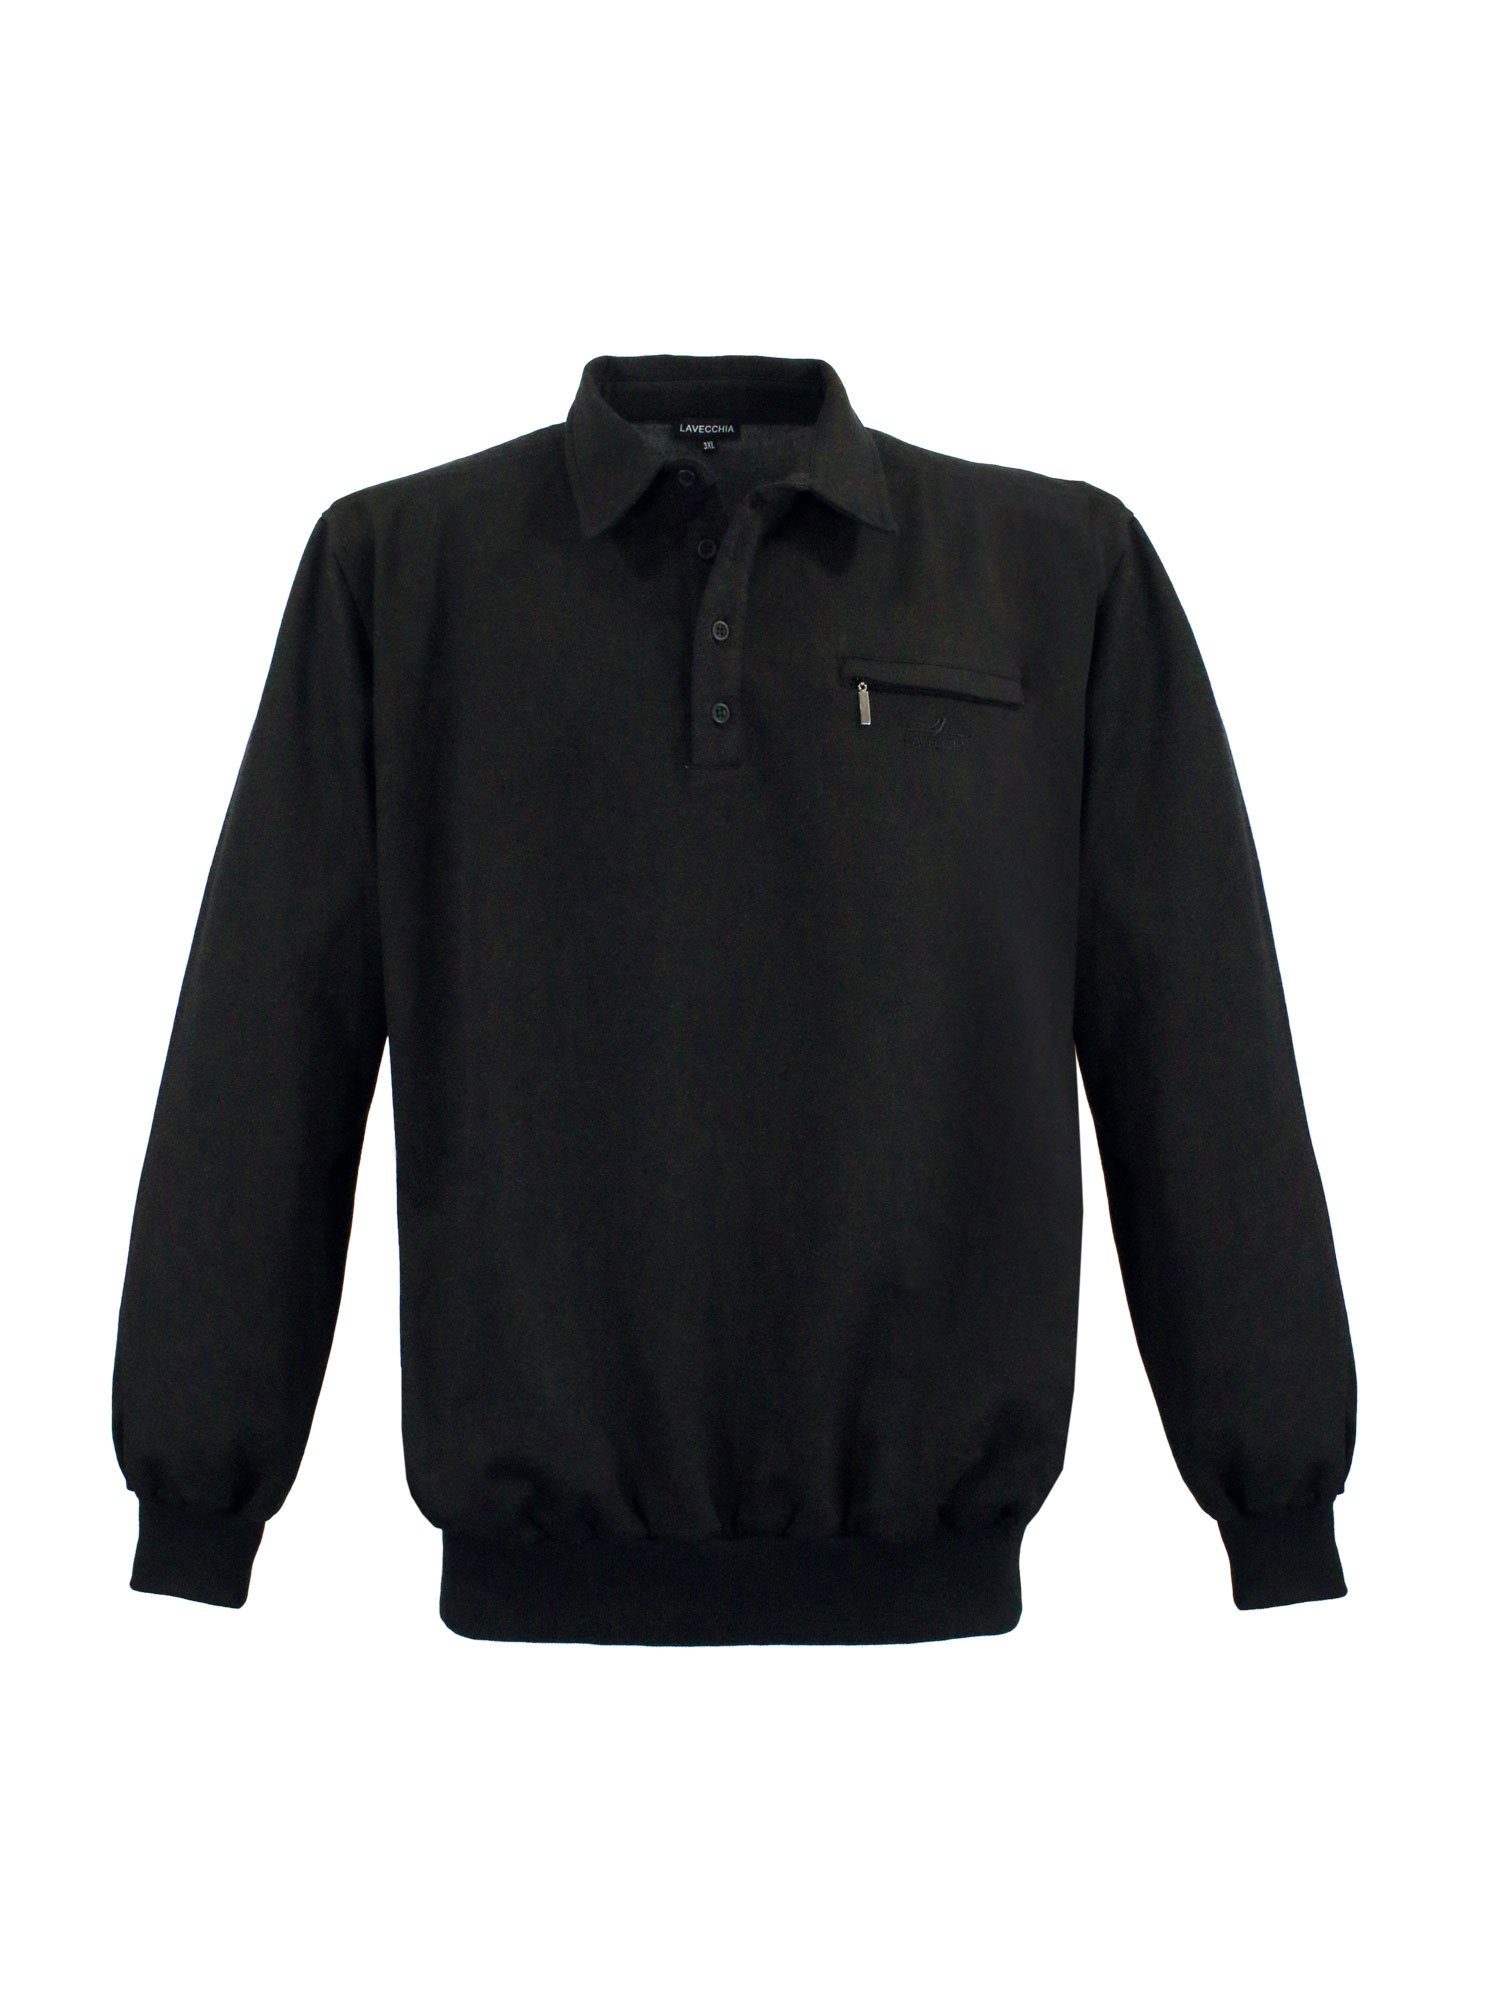 Lavecchia Sweatshirt Übergrößen Sweater Pulli LV-705S Pullover schwarz Sweat